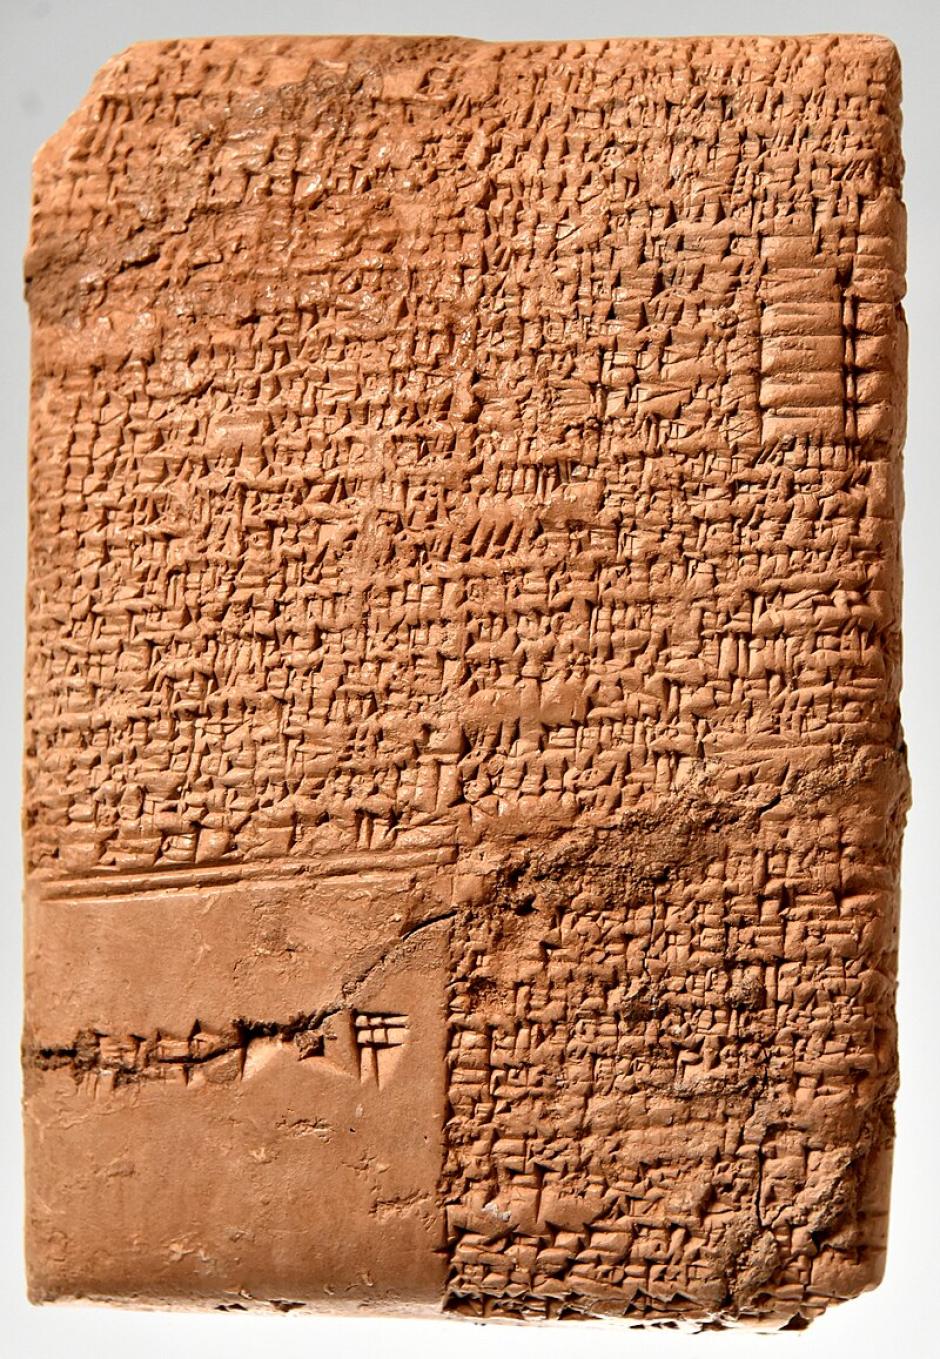 Tableta de arcilla. la historia de Gilgamesh y Aga. Período de la antigua Babilonia, 2003-1595 a.C. Compra. Del sur de Irak; procedencia precisa desconocida. Museo de Sulaymaniyah, Kurdistán iraquí.